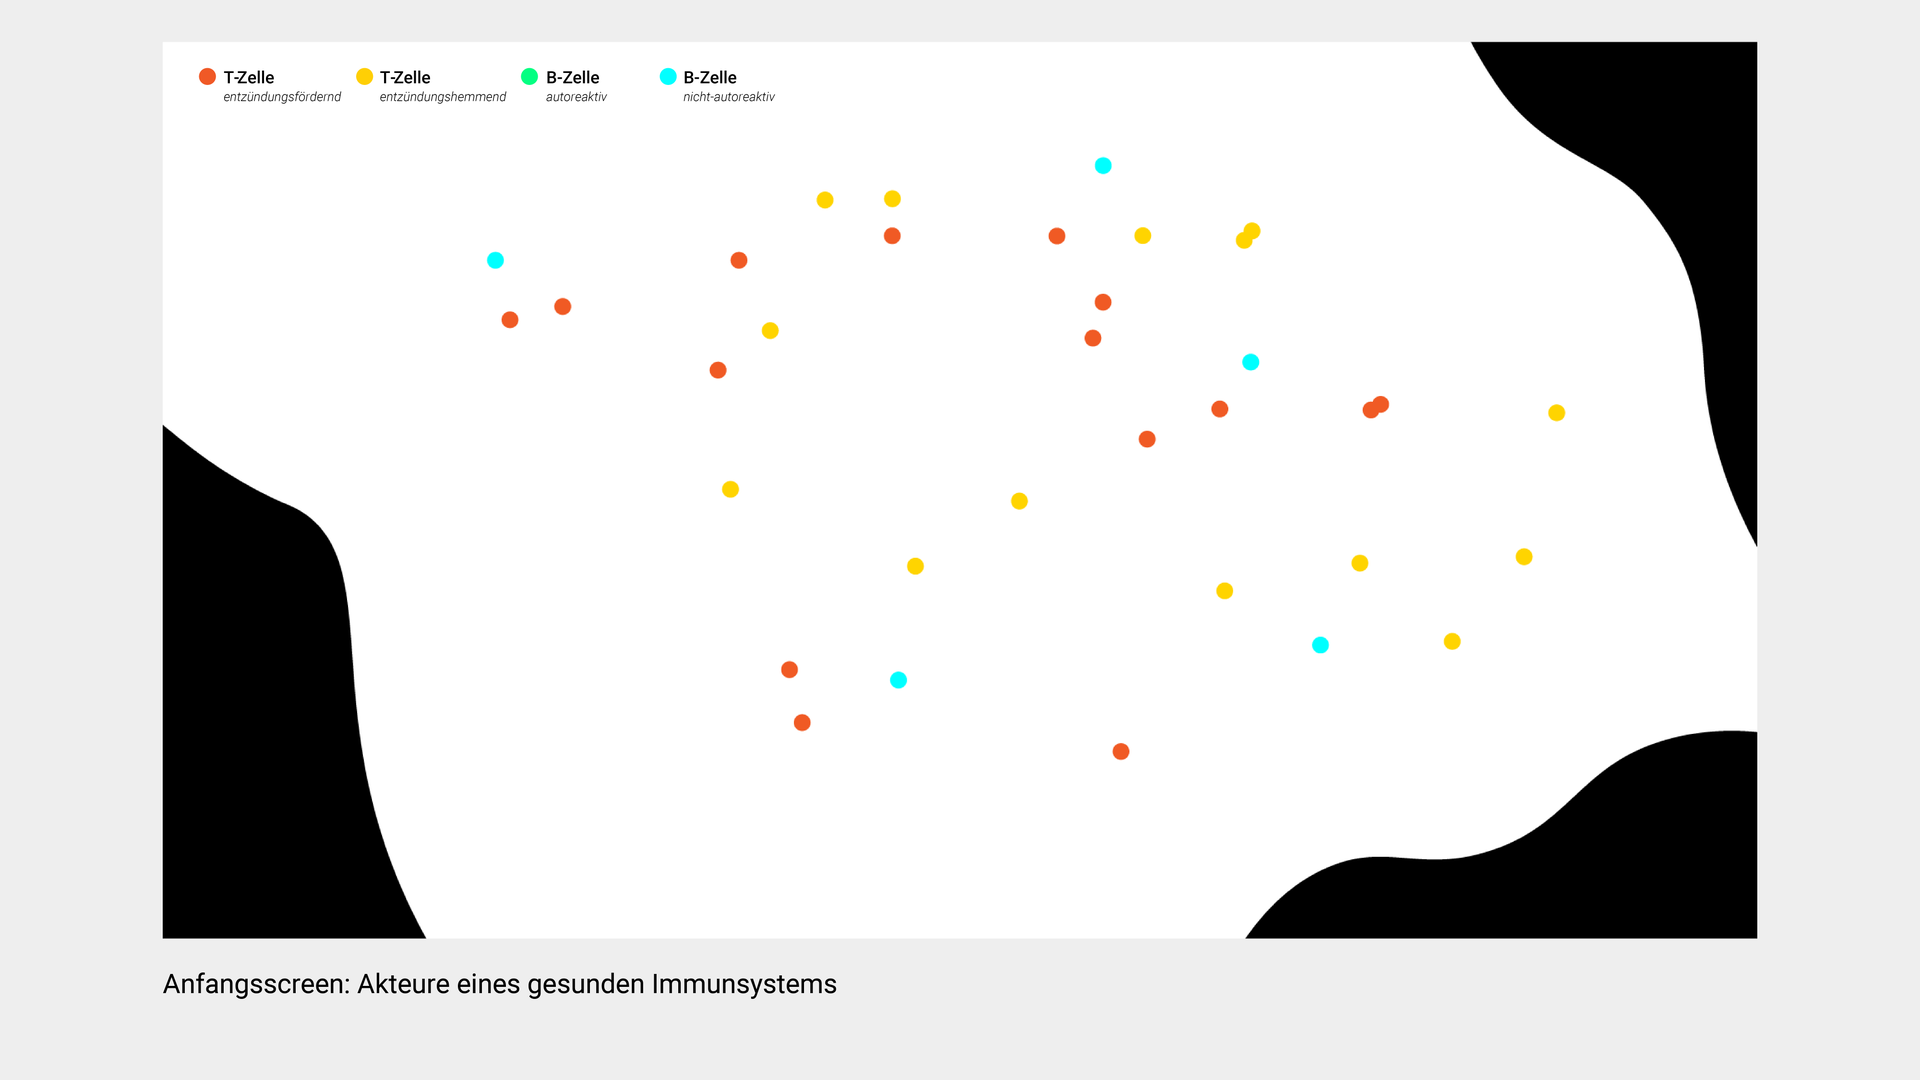 Farbige Punkte stellen verschiedene Immunzellen dar